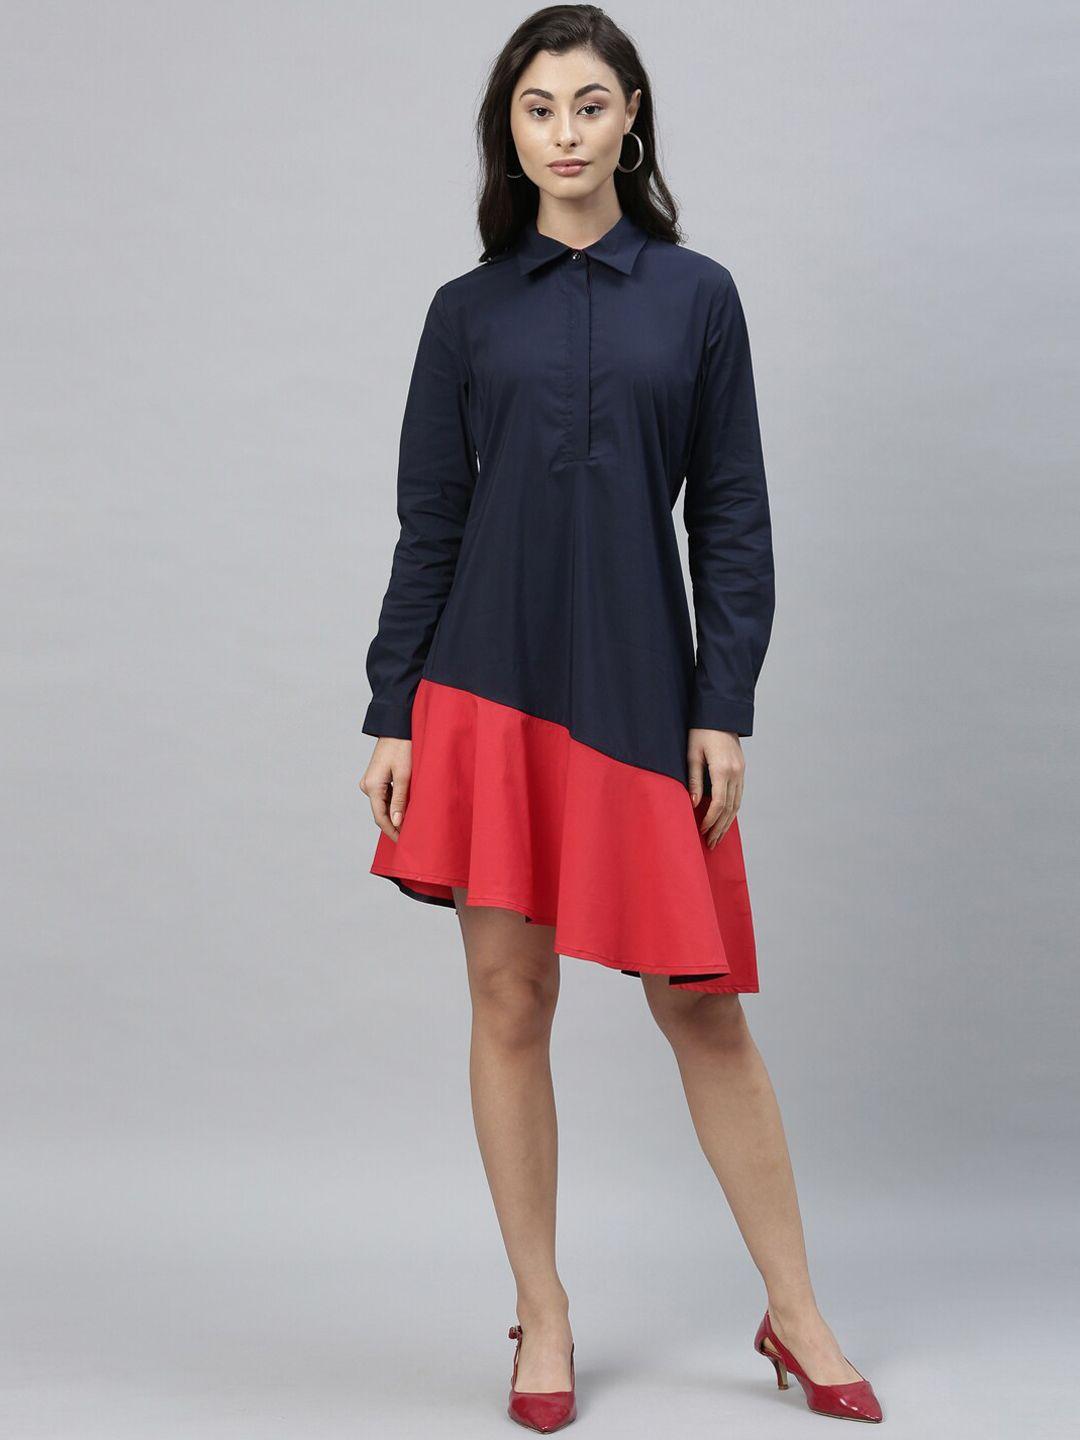 rareism women navy blue & red colourblocked shirt dress with ruffles